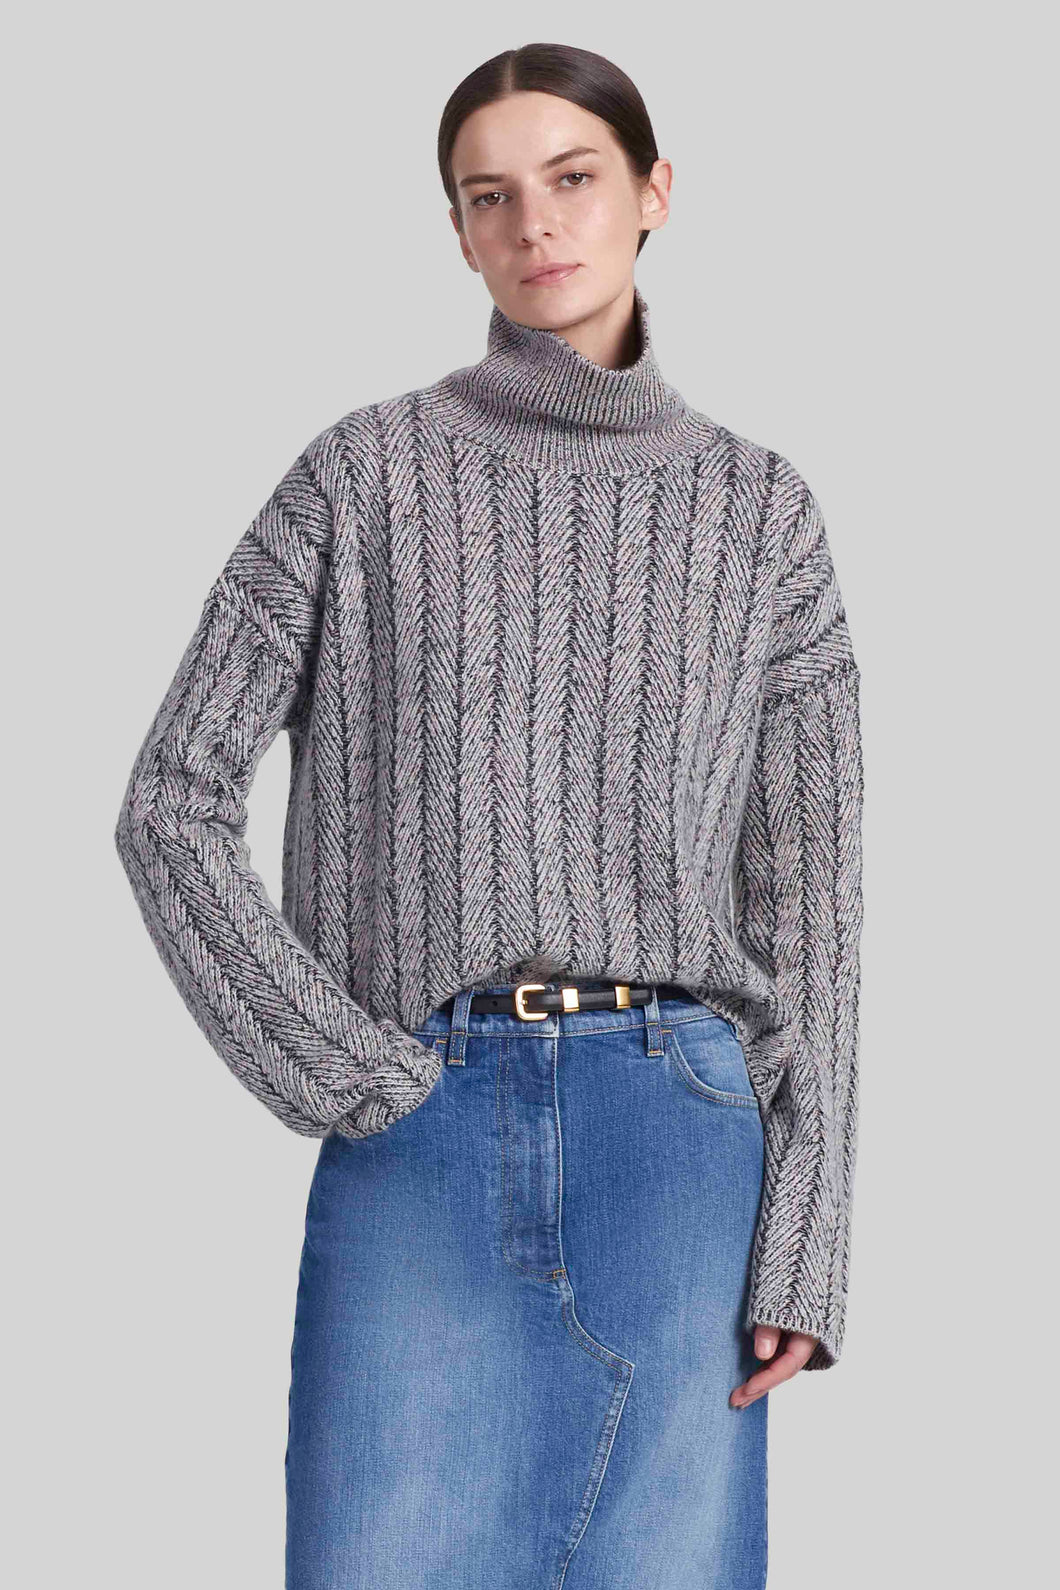 Altuzarra_'Terence' Sweater_Natural Melange/ Black